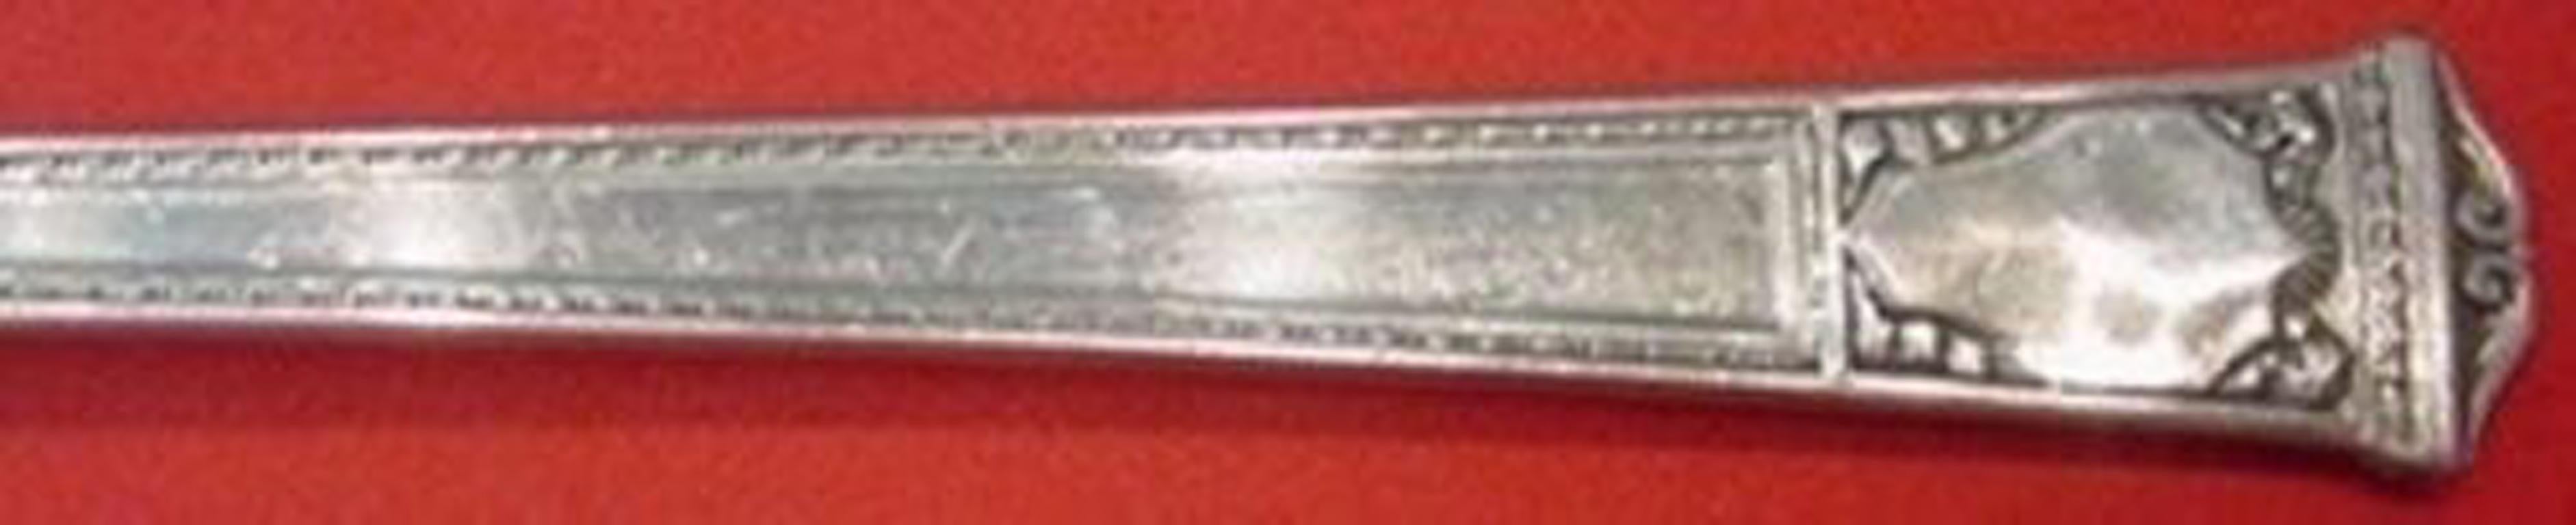 Sterling silver pickle fork 5 3/4